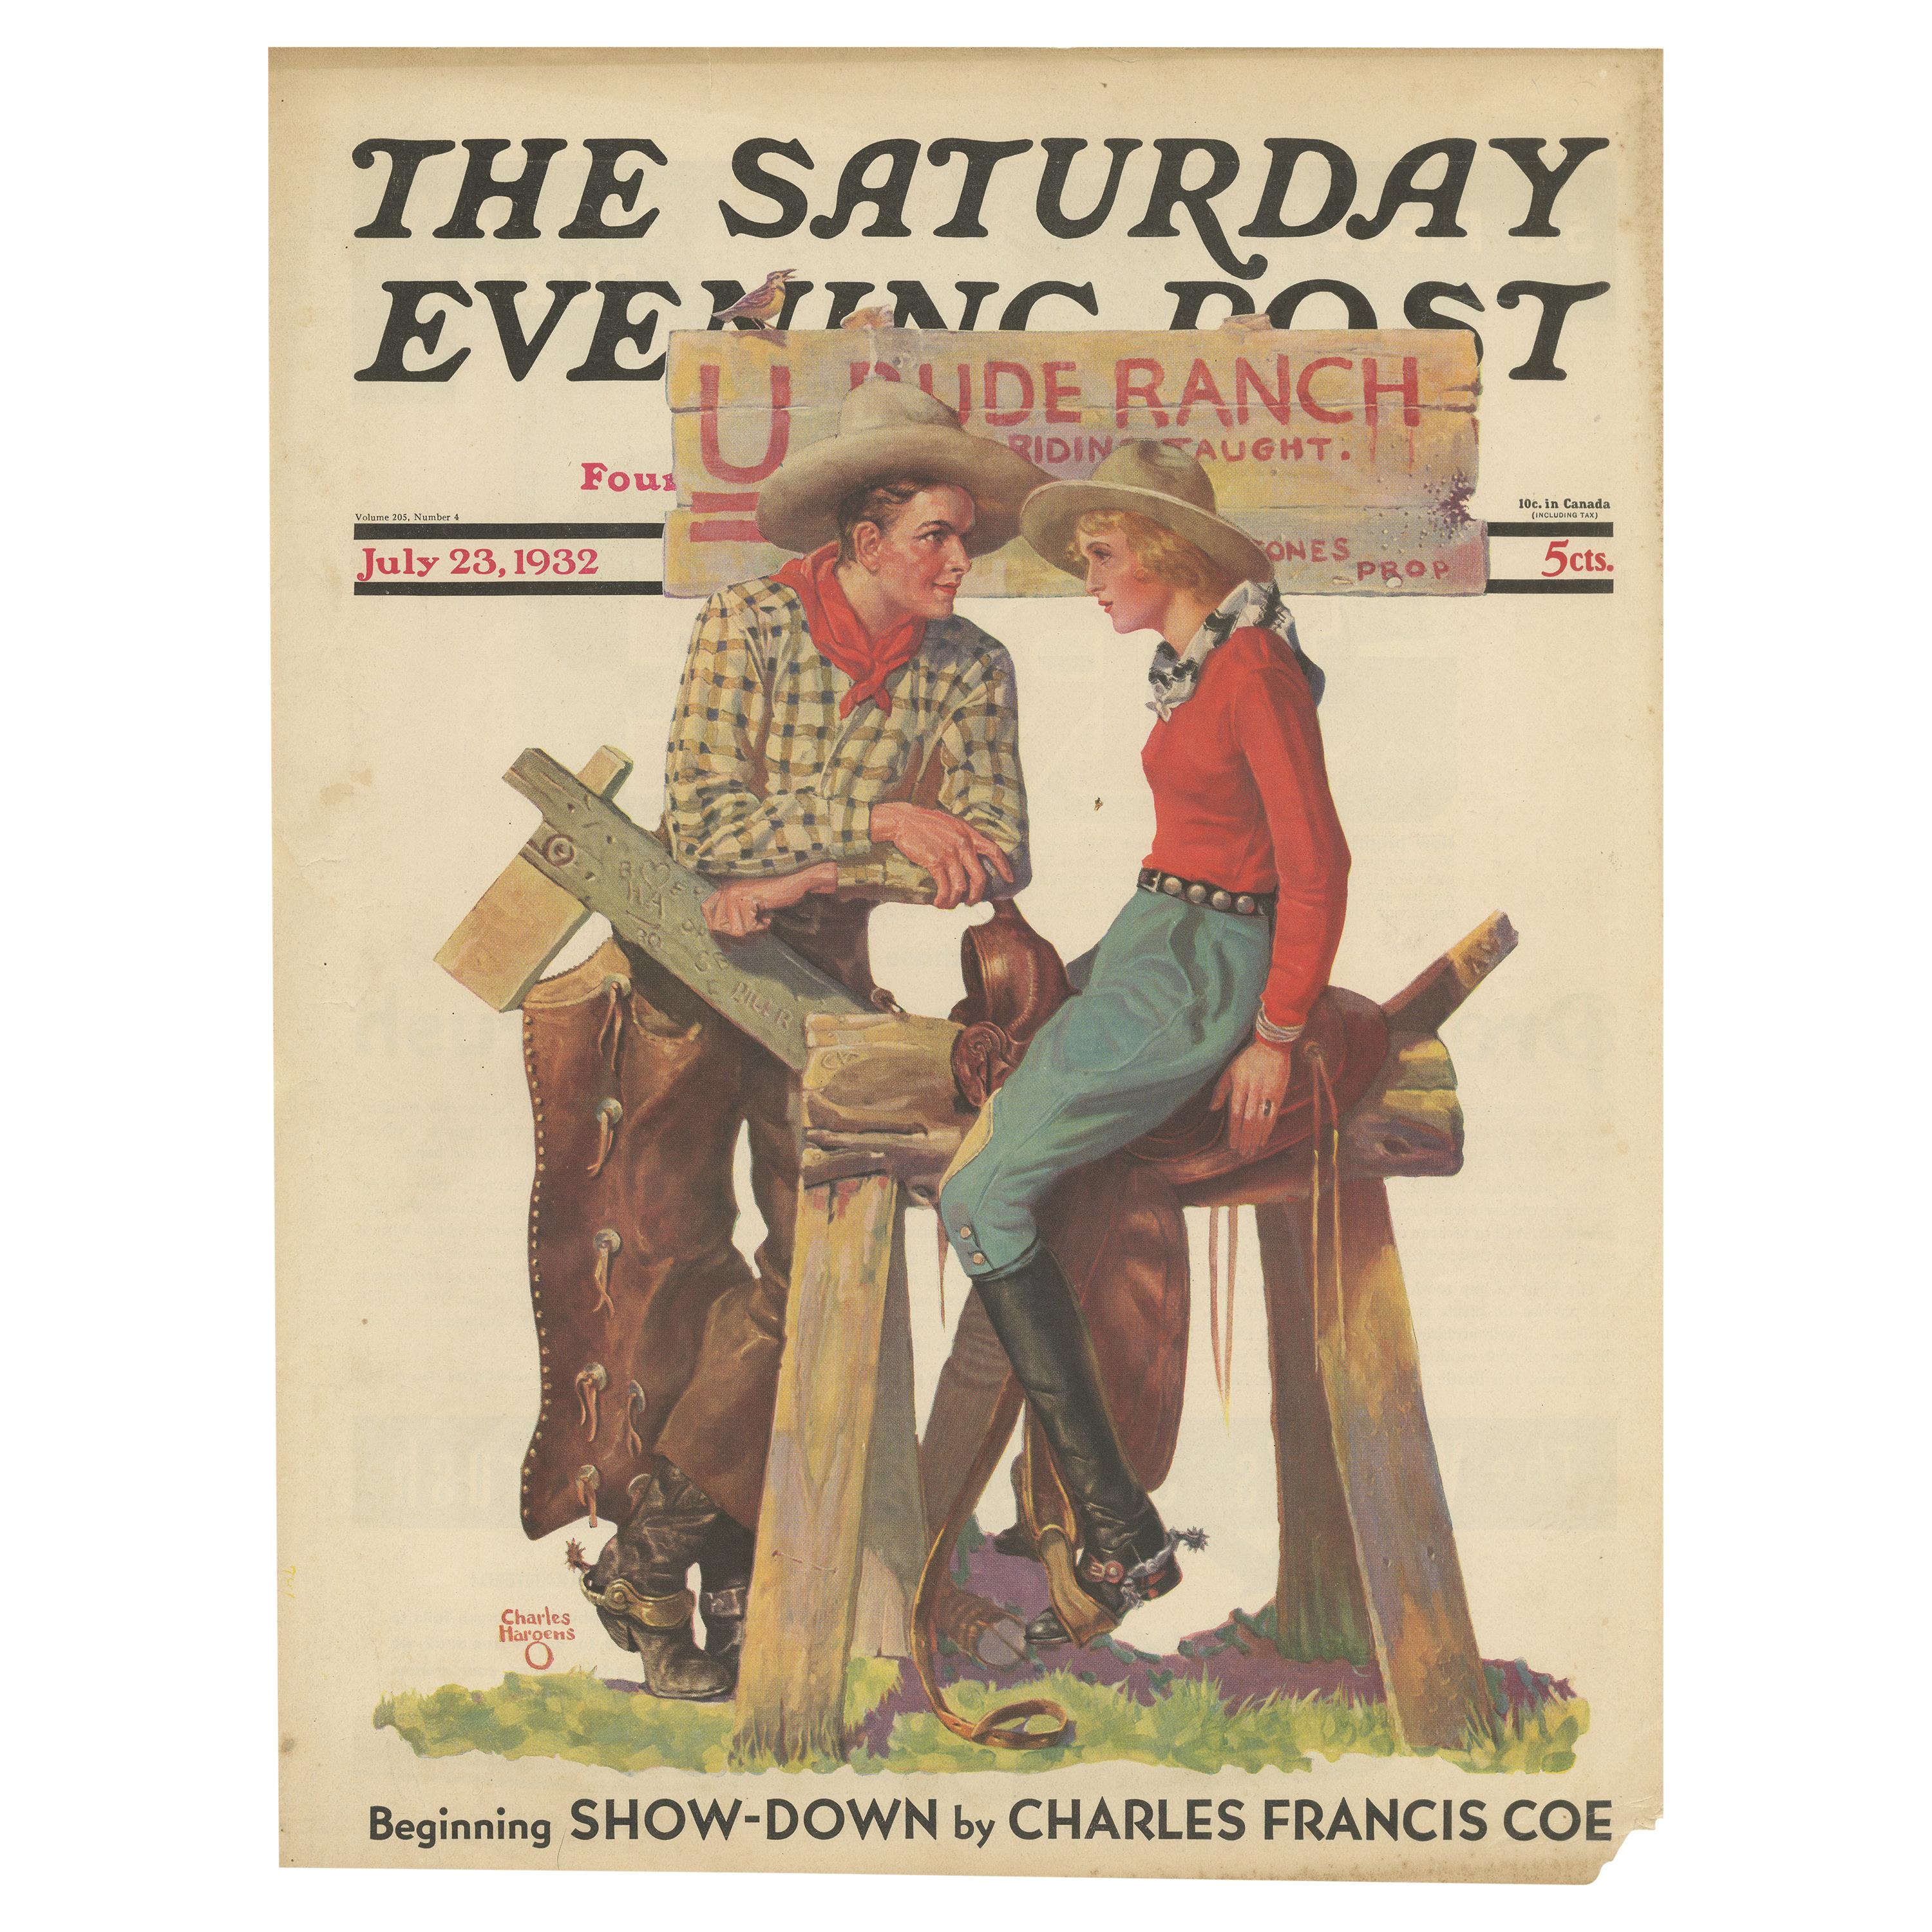 Affiche vintage des ranchs « The Saturday Evening Post » (Le soir du samedi) de 1932